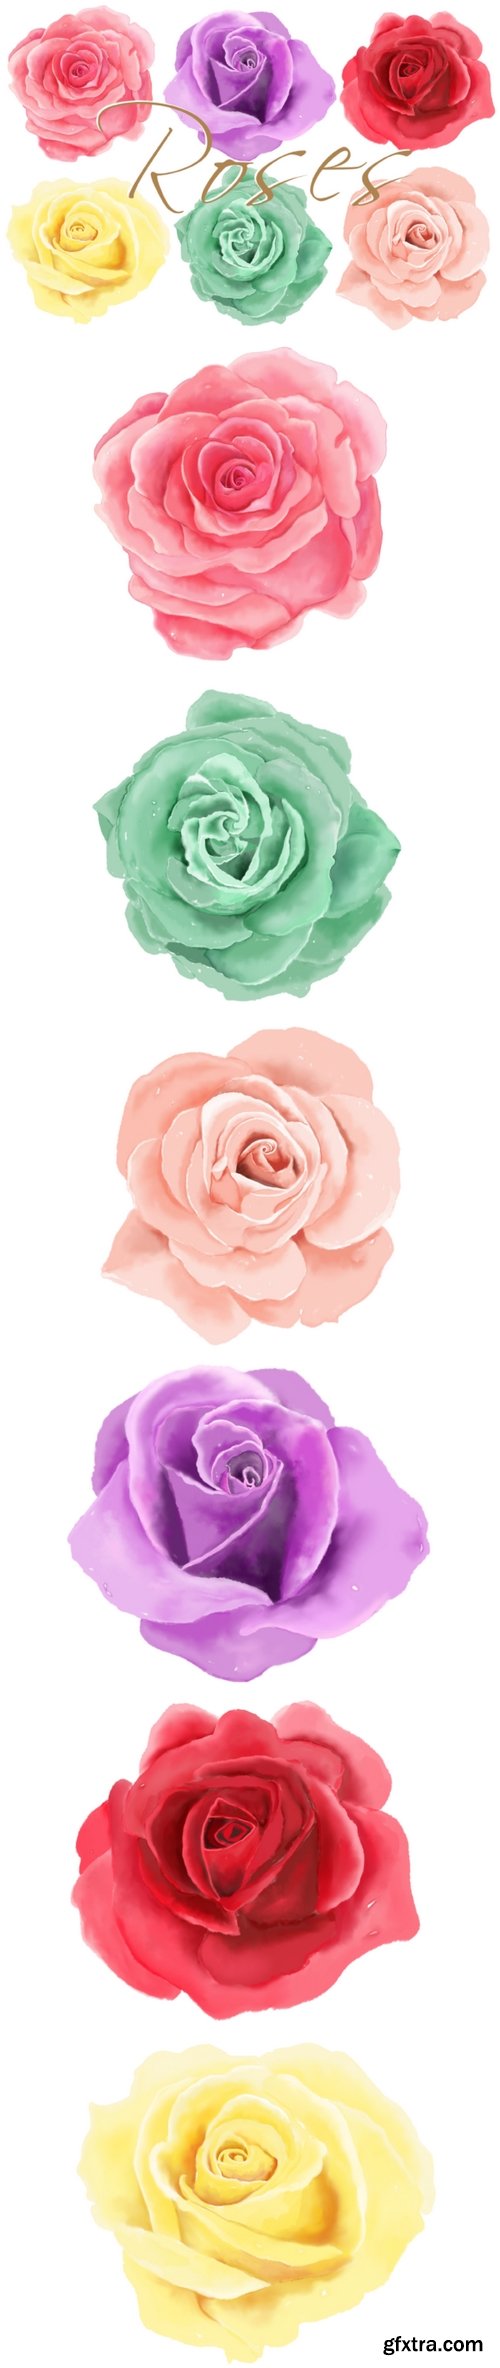 6 Digital Watercolor Roses